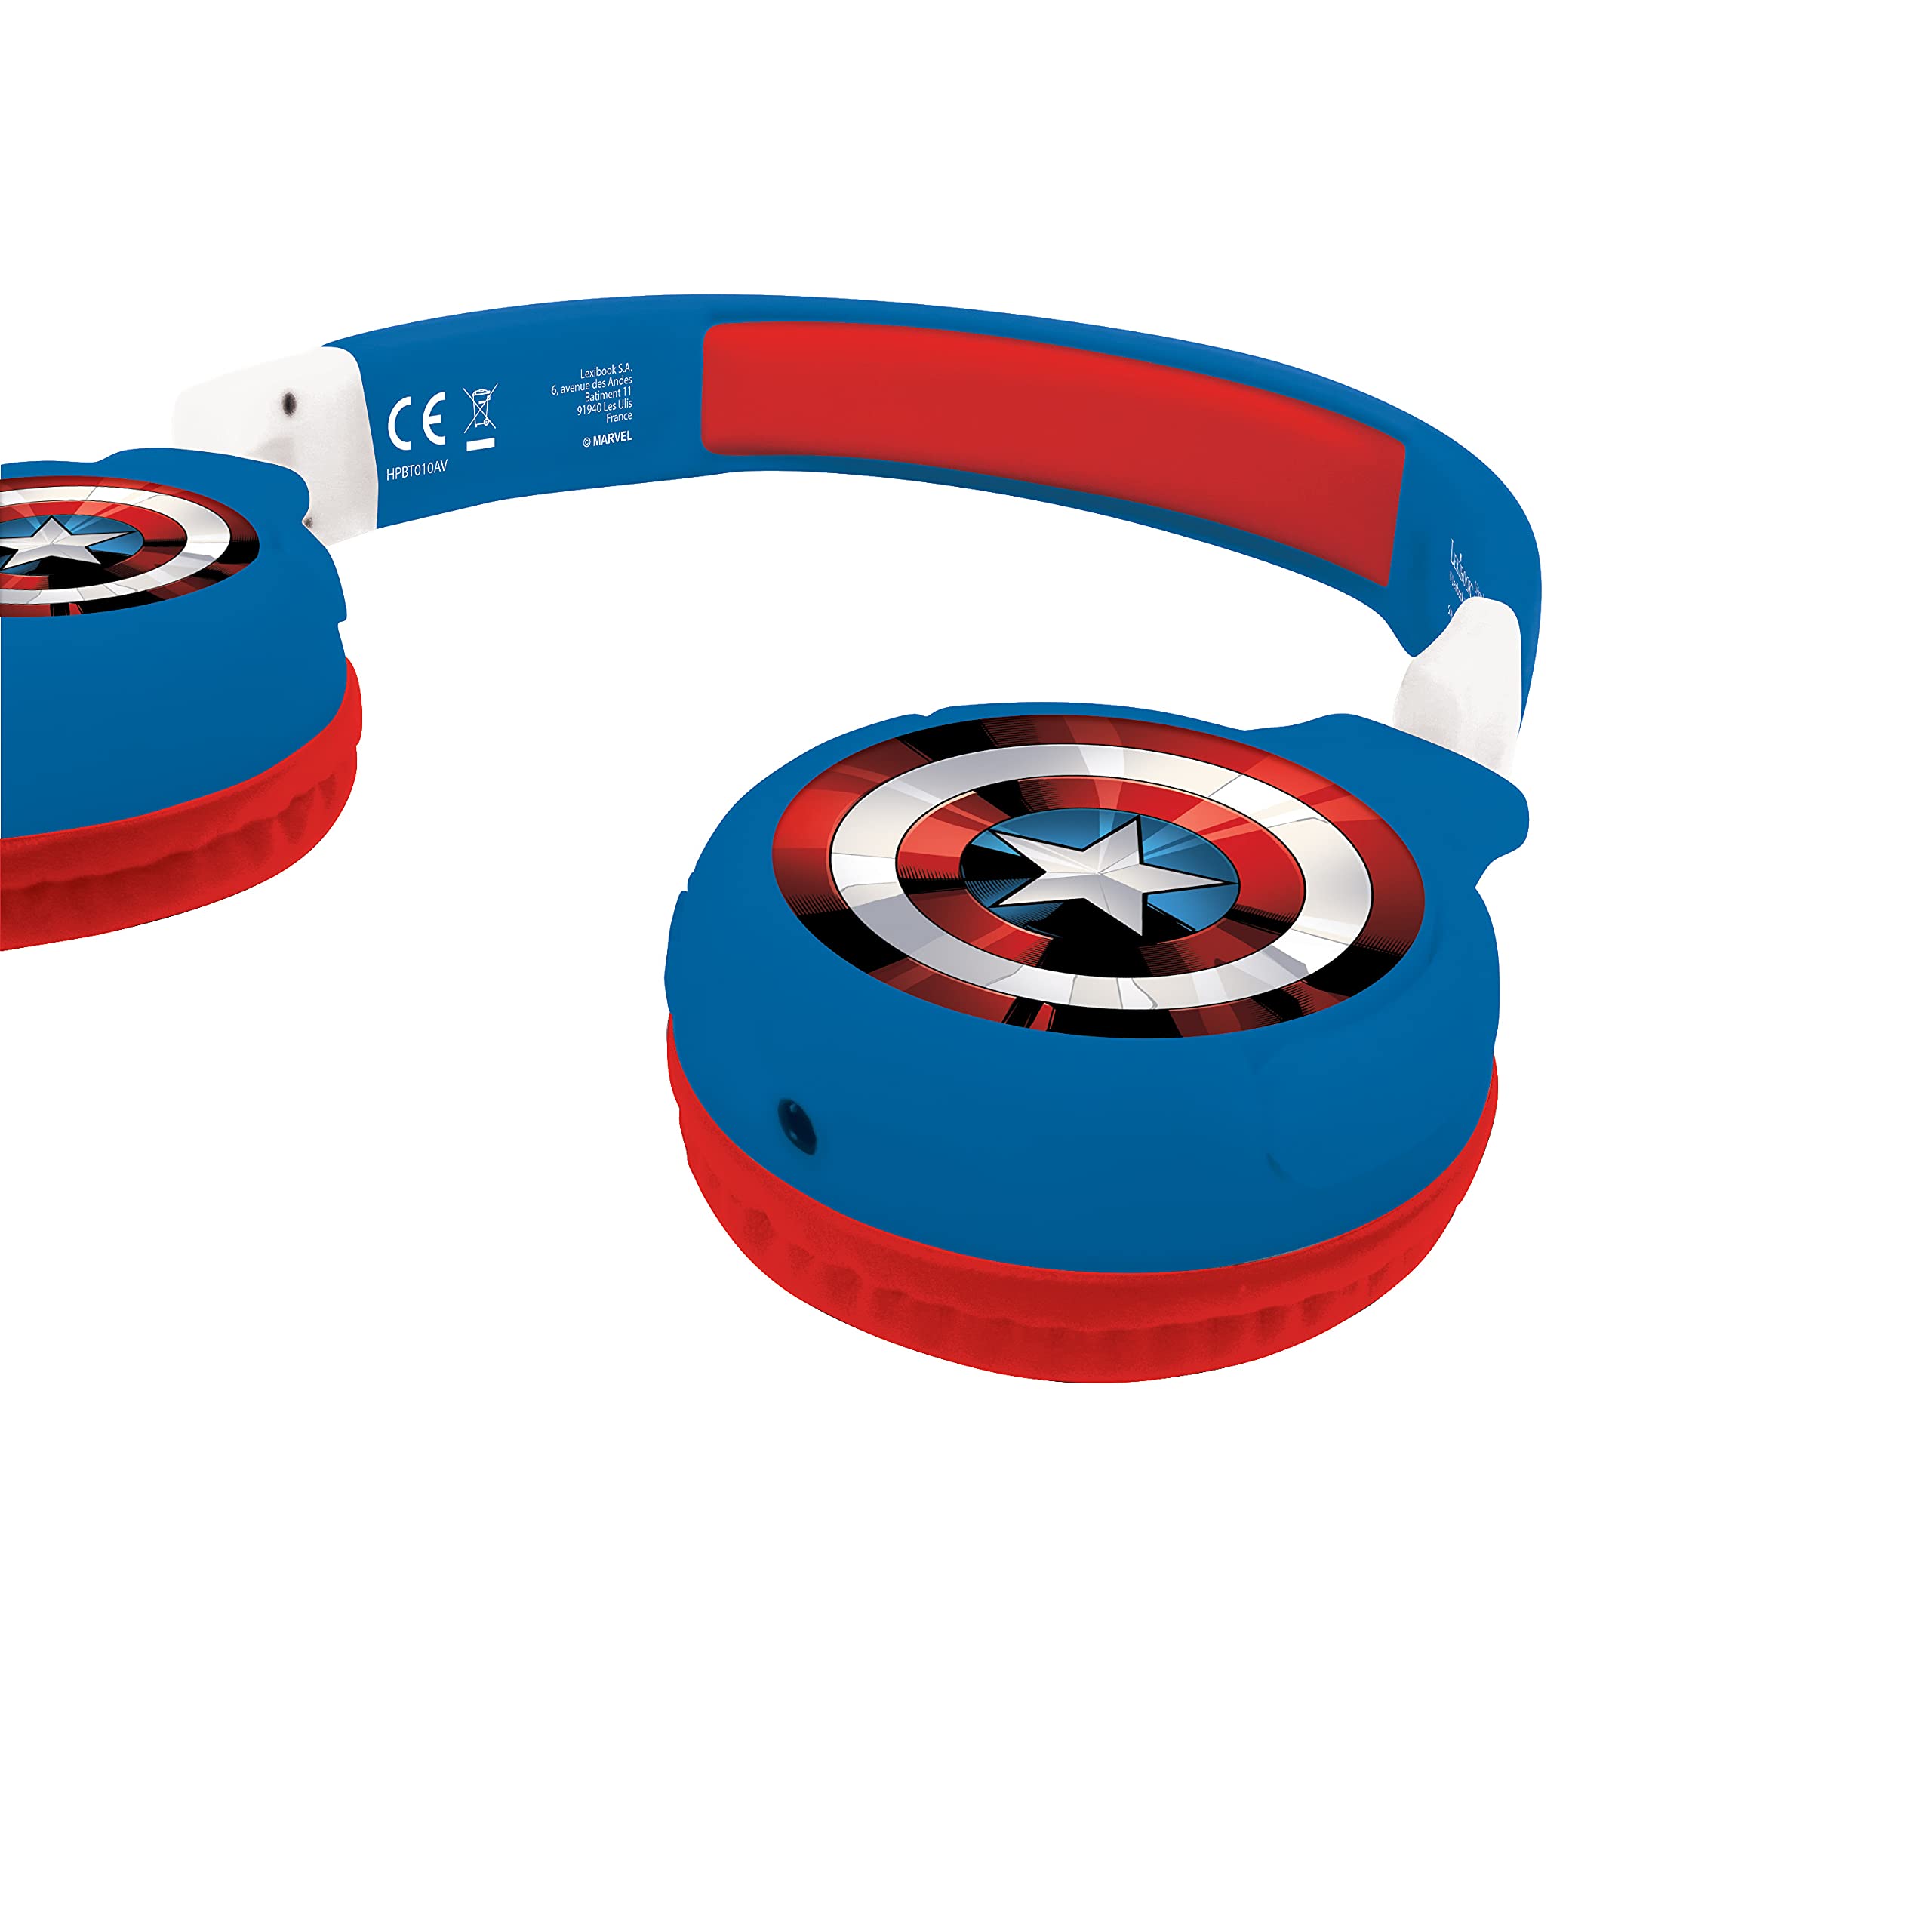 LEXiBOOK Avengers Marvel 2-in-1 Bluetooth Headphones for Kids - Stereo Wireless Wired, Kids Safe, Foldable, Adjustable, red/Blue, HPBT010AV